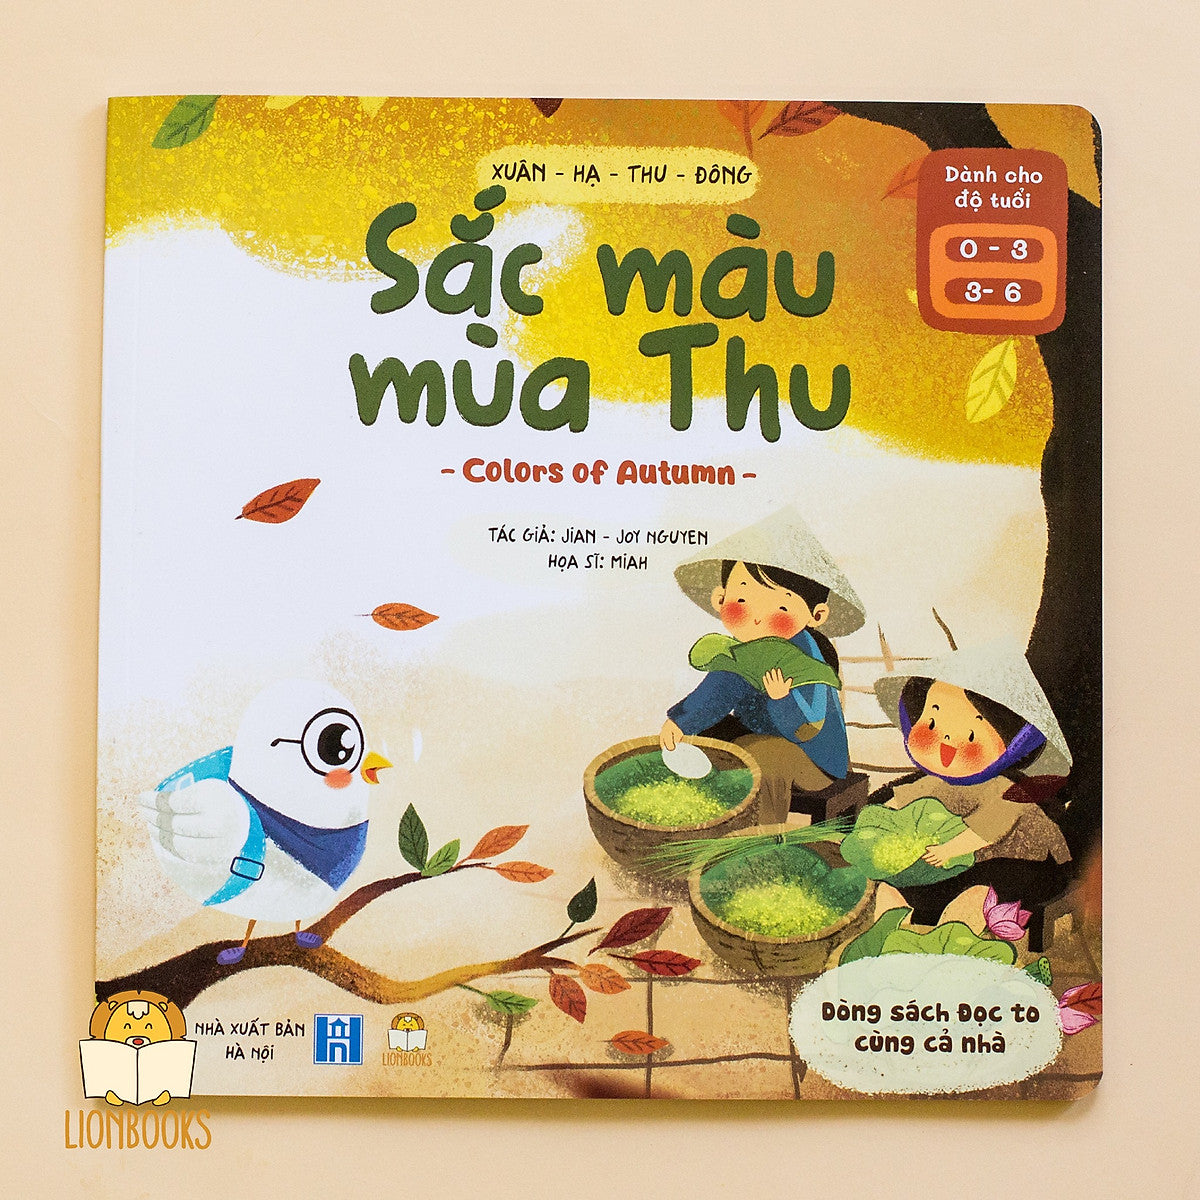 Four Seasons & 4 Senses: Bilingual 4-book Set| Xuân Hạ Thu Đông - Song Ngữ 4 Mùa & 4 Giác Quan